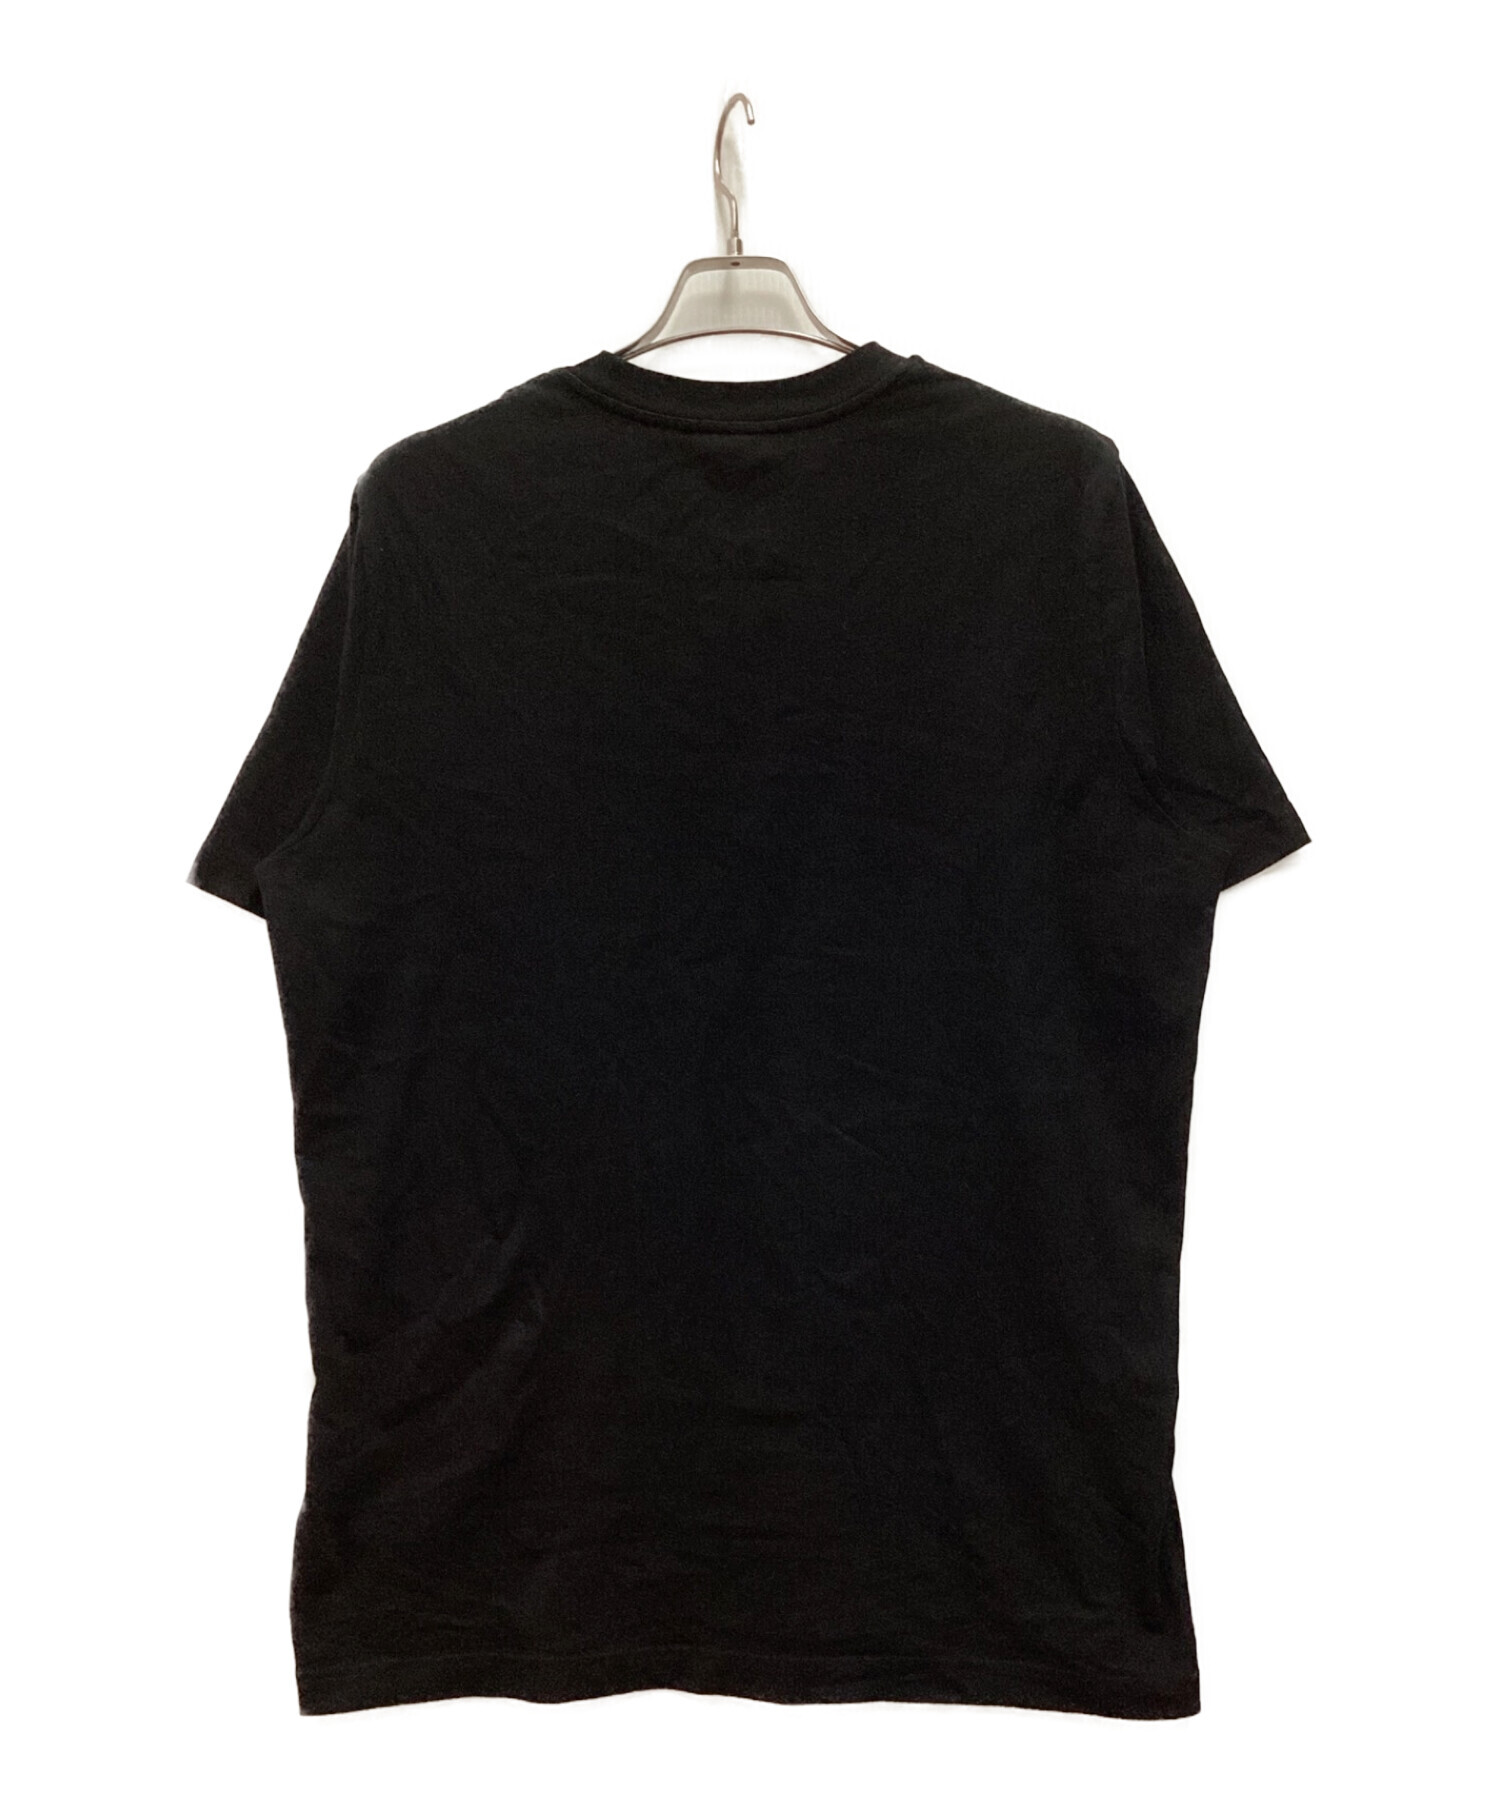 MONCLER (モンクレール) クルーネックロゴTシャツ ブラック サイズ:M